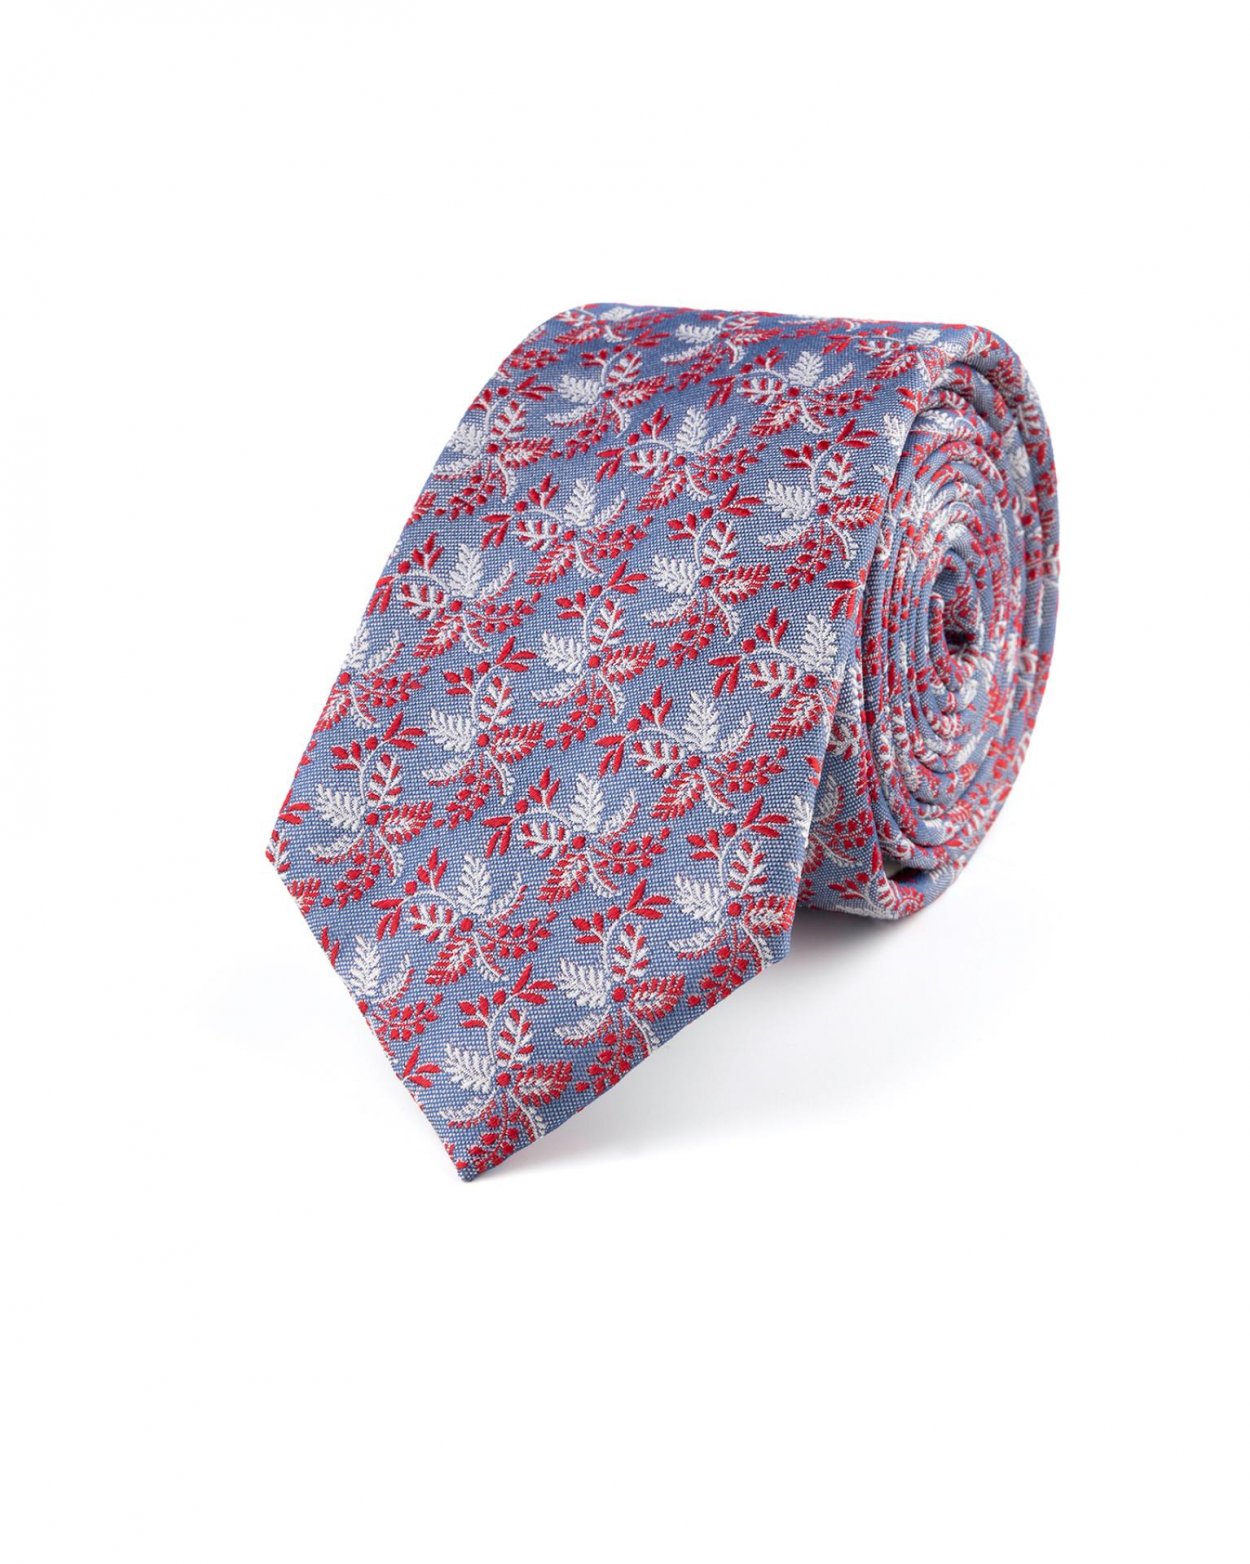 Modro červená hedvábná kravata se vzorem